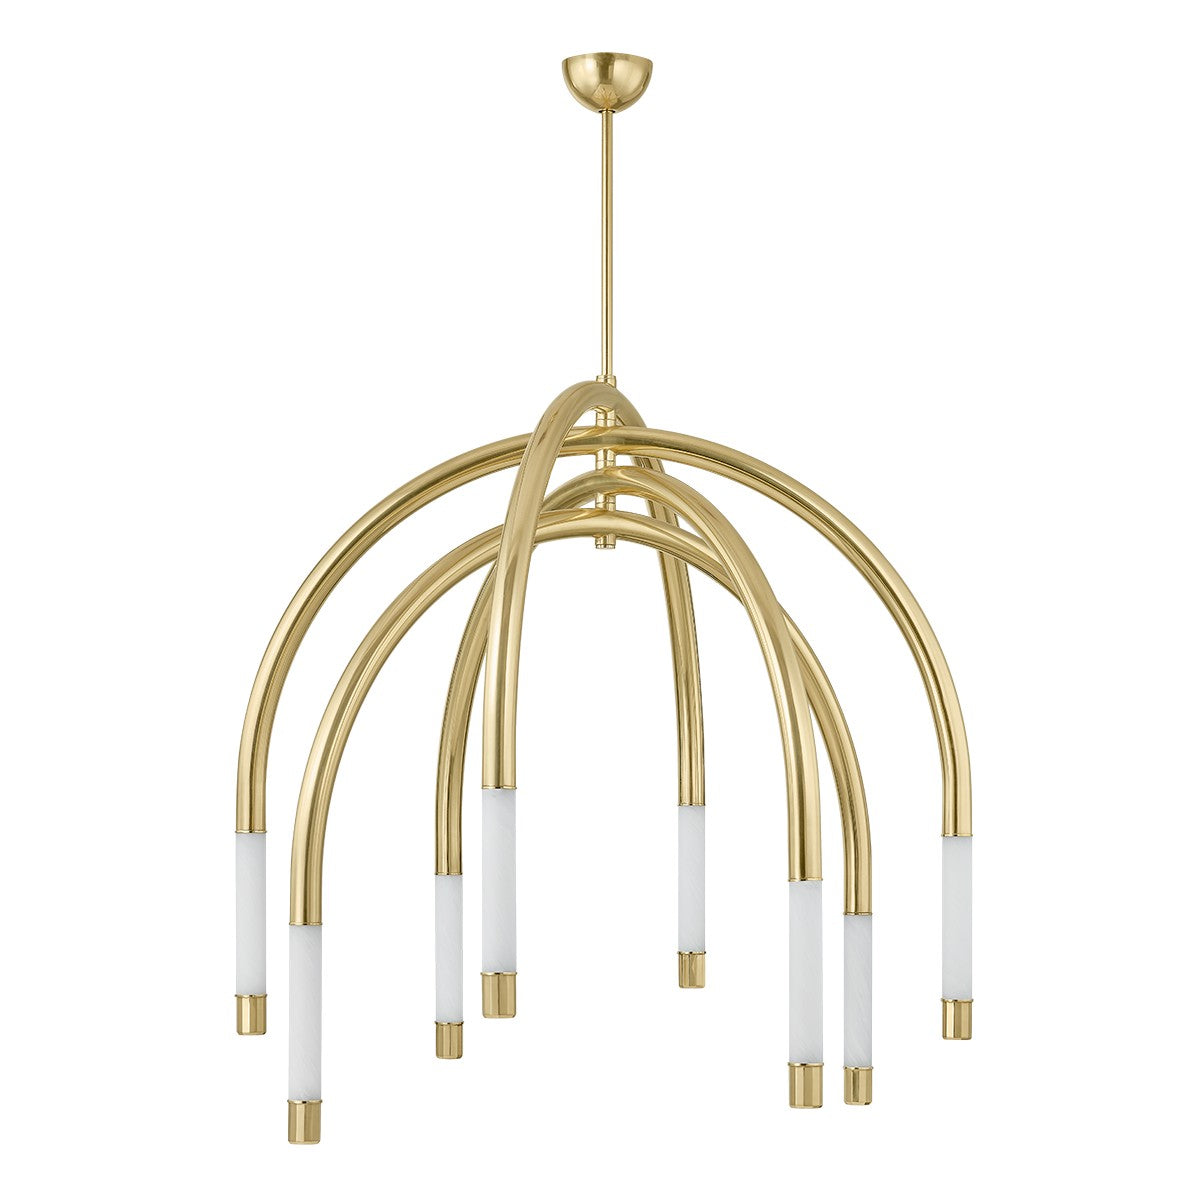 Corbett Lighting - LED Chandelier - Zeme - Vintage Polished Brass- Union Lighting Luminaires Decor